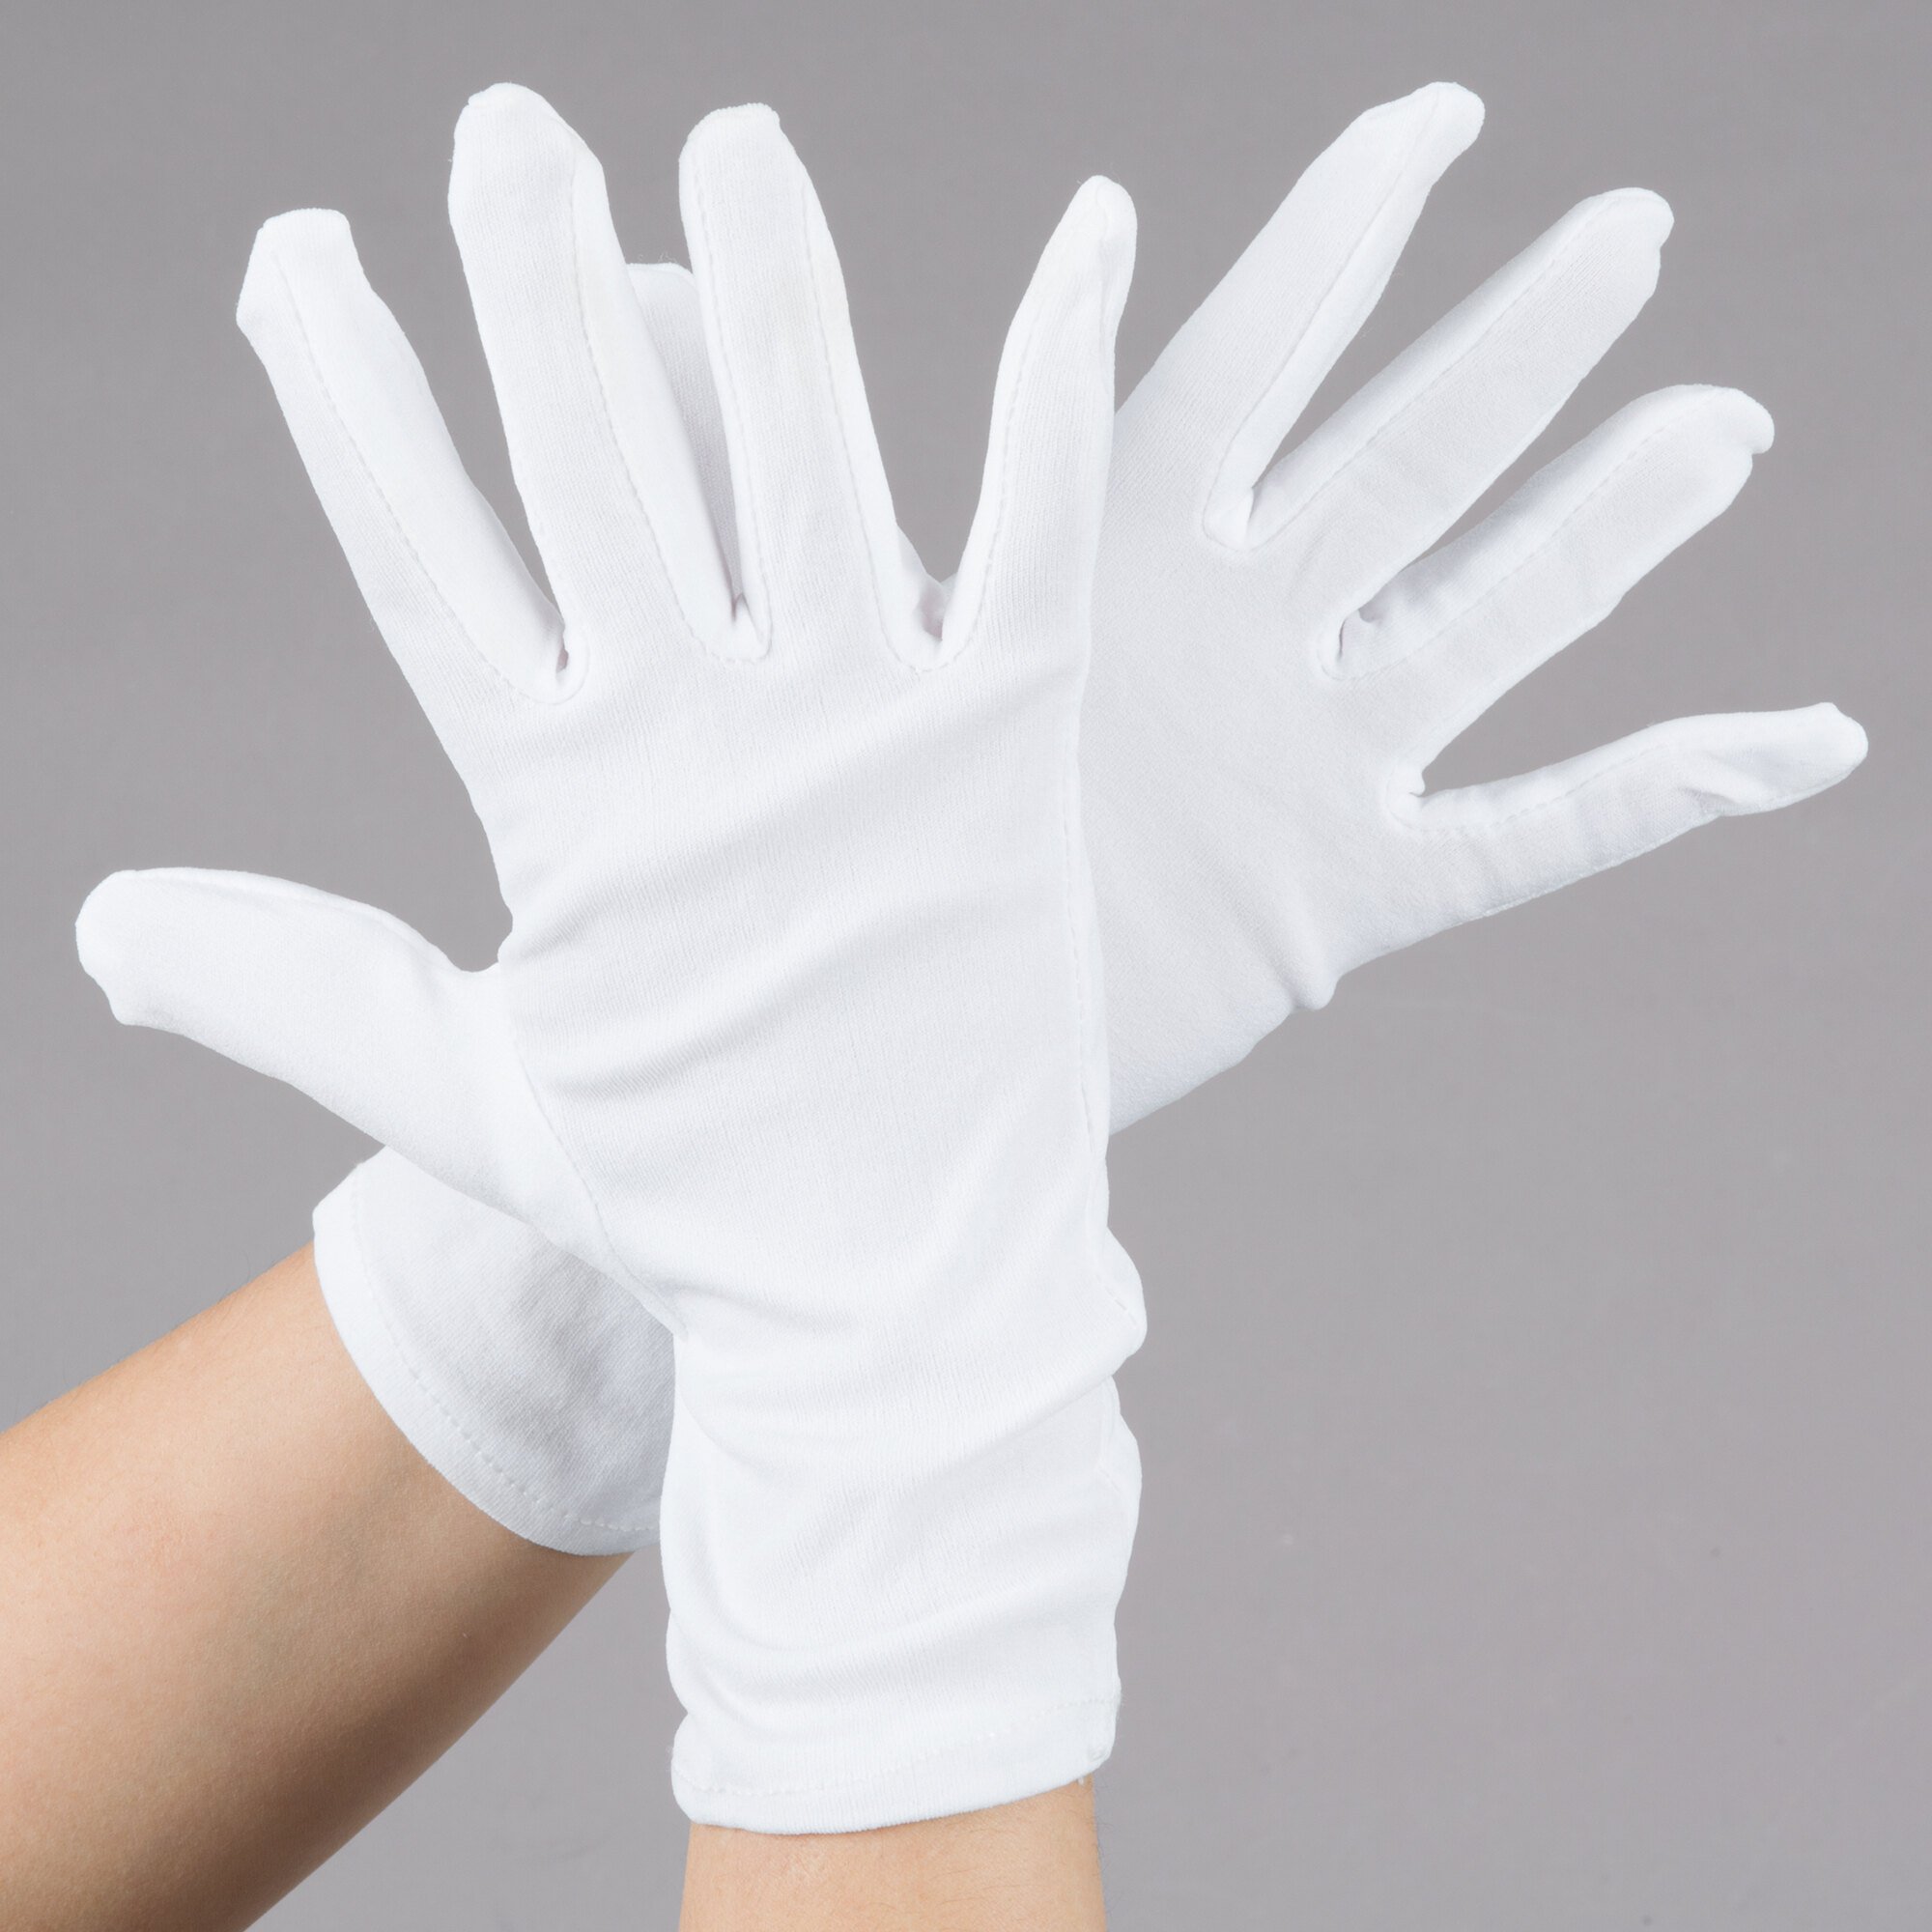 Men's White Stretch Nylon Inspector's Gloves - Large - Pair - 12/Pack